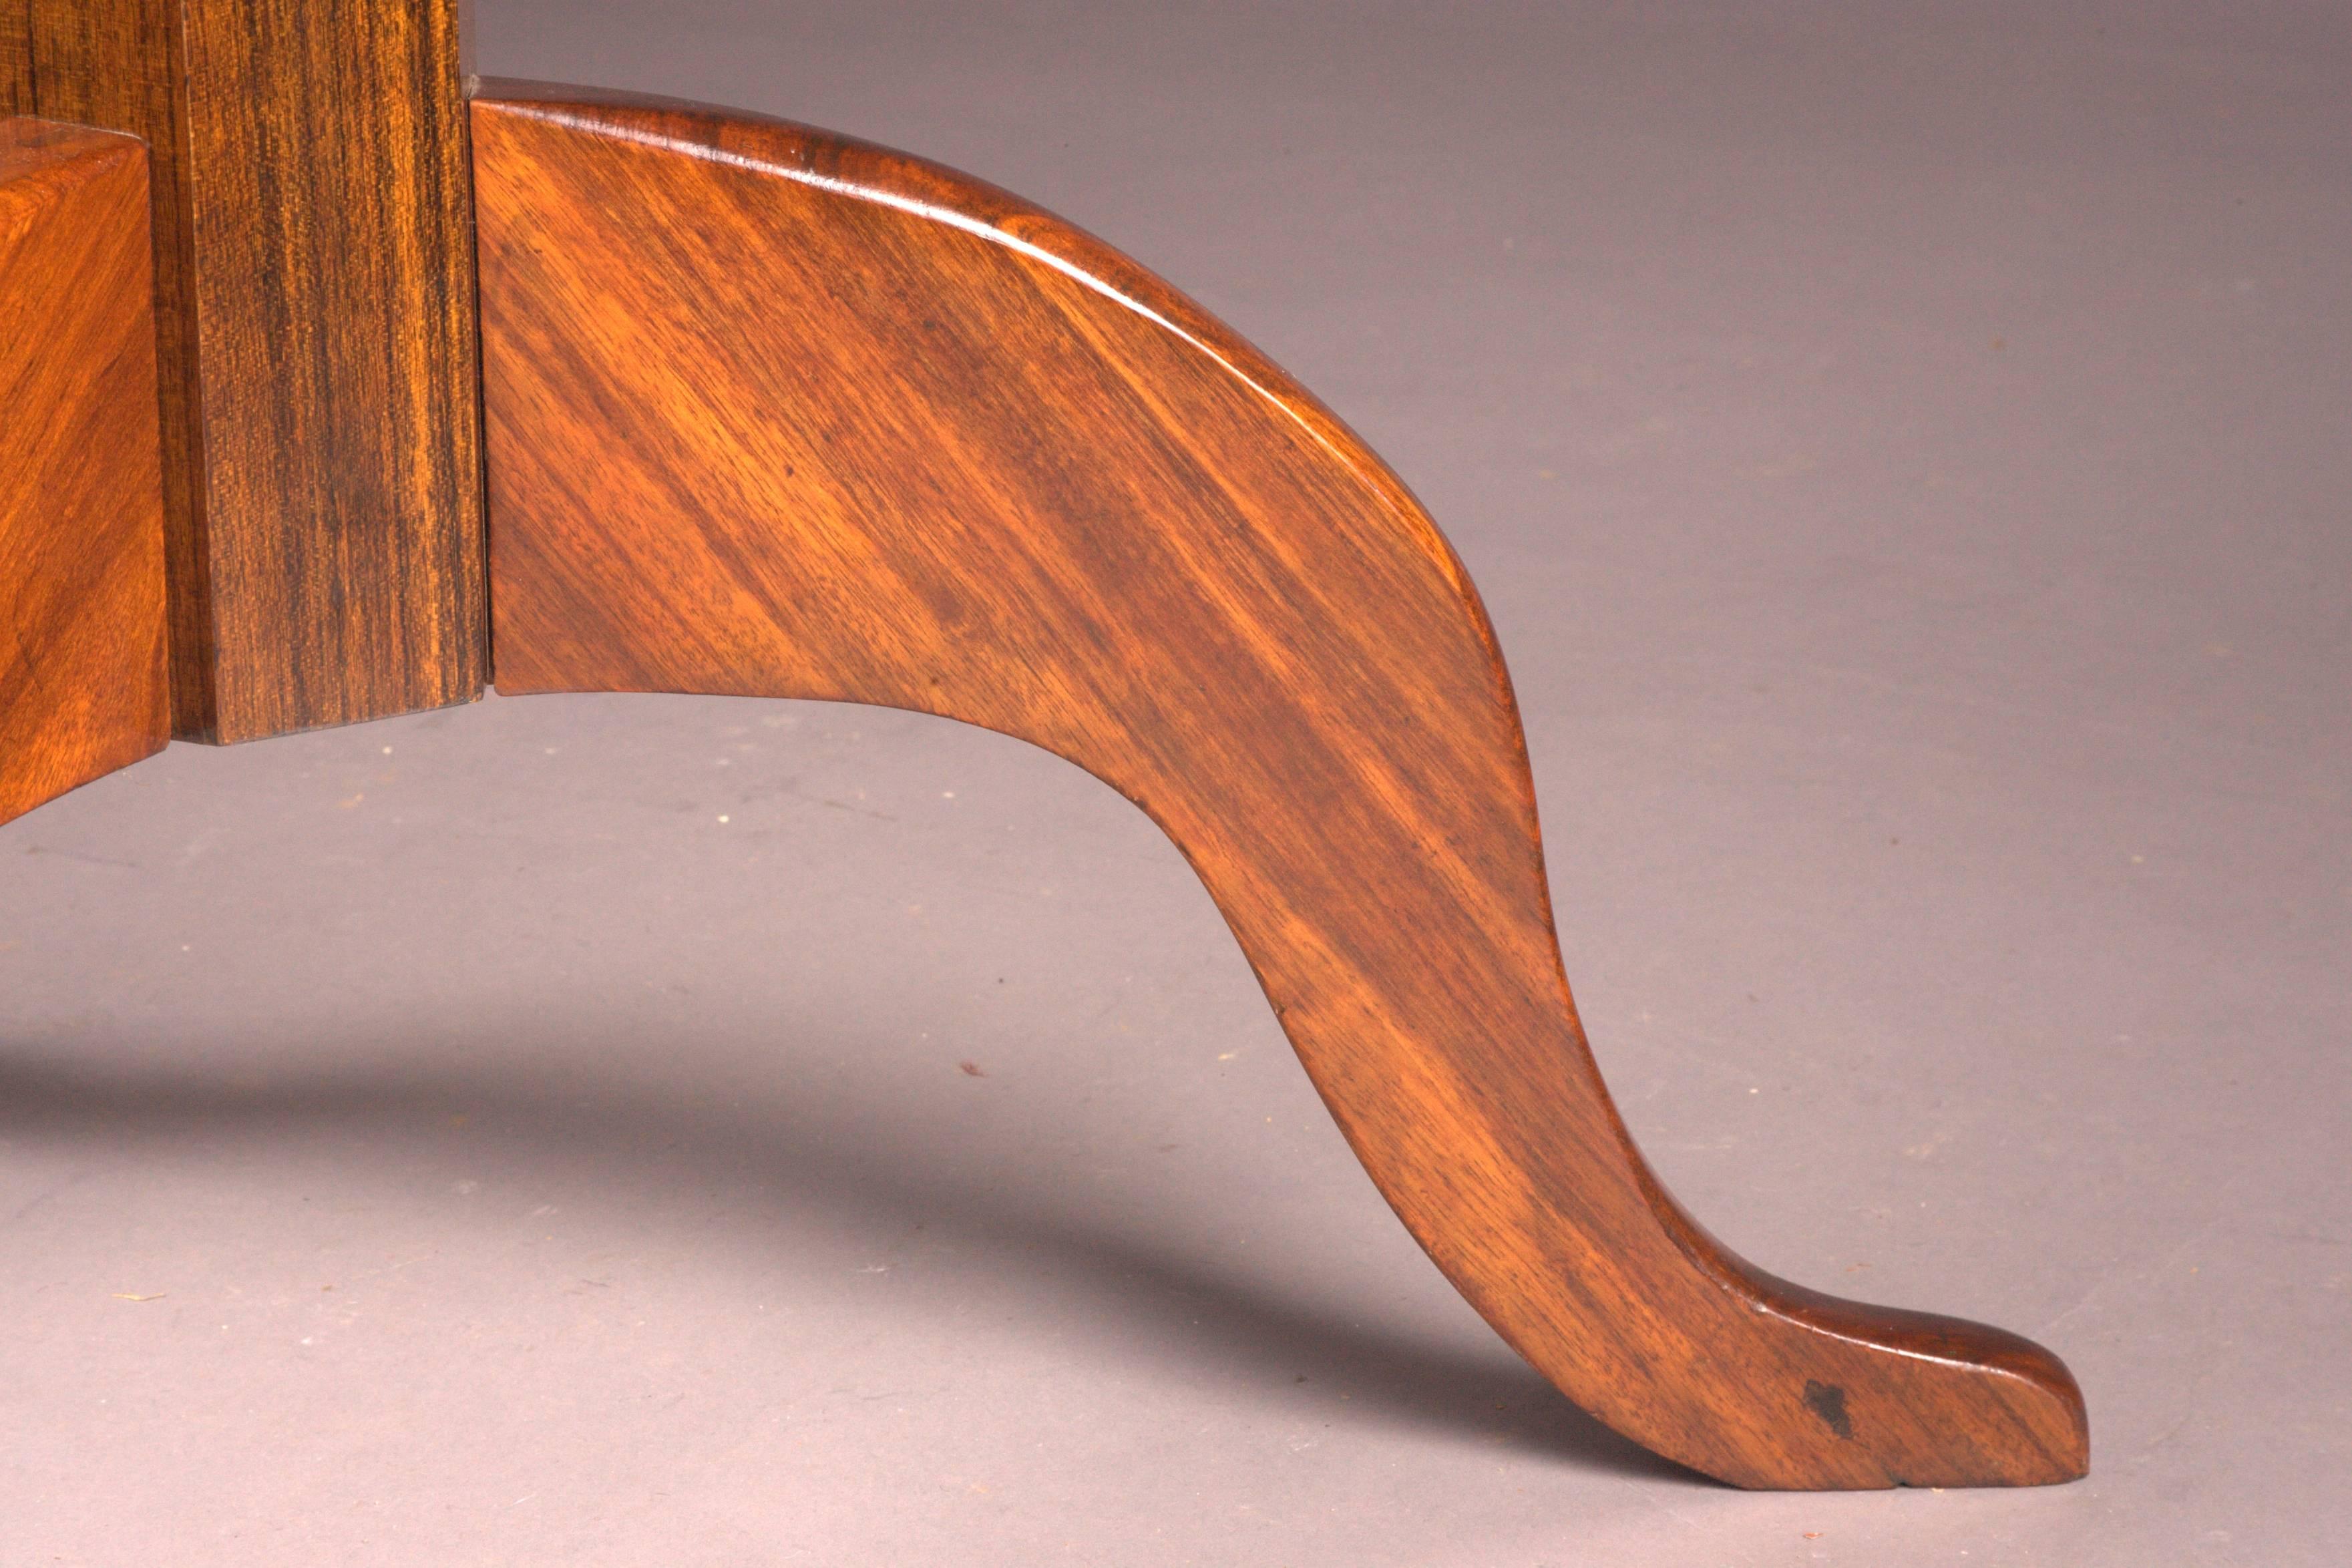 Original Antique Round Biedermeier Folding Table, circa 1820 Mahogany veneer For Sale 2